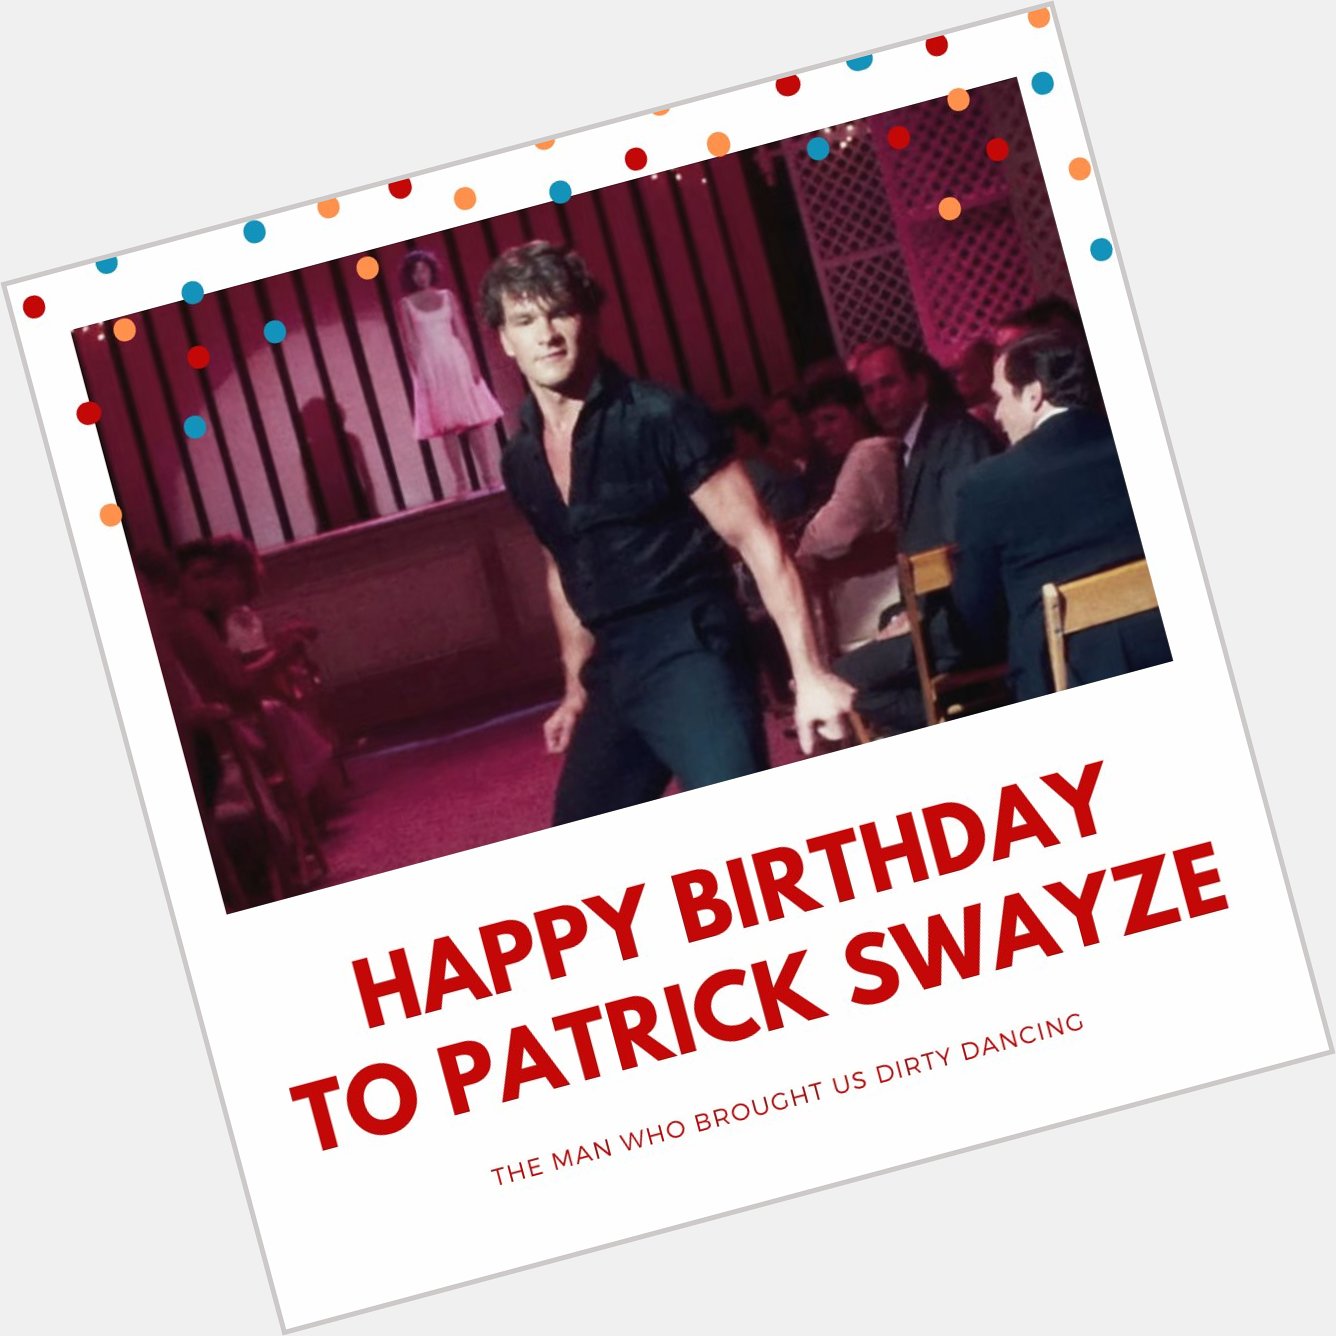 Happy Birthday to Patrick Swayze! 